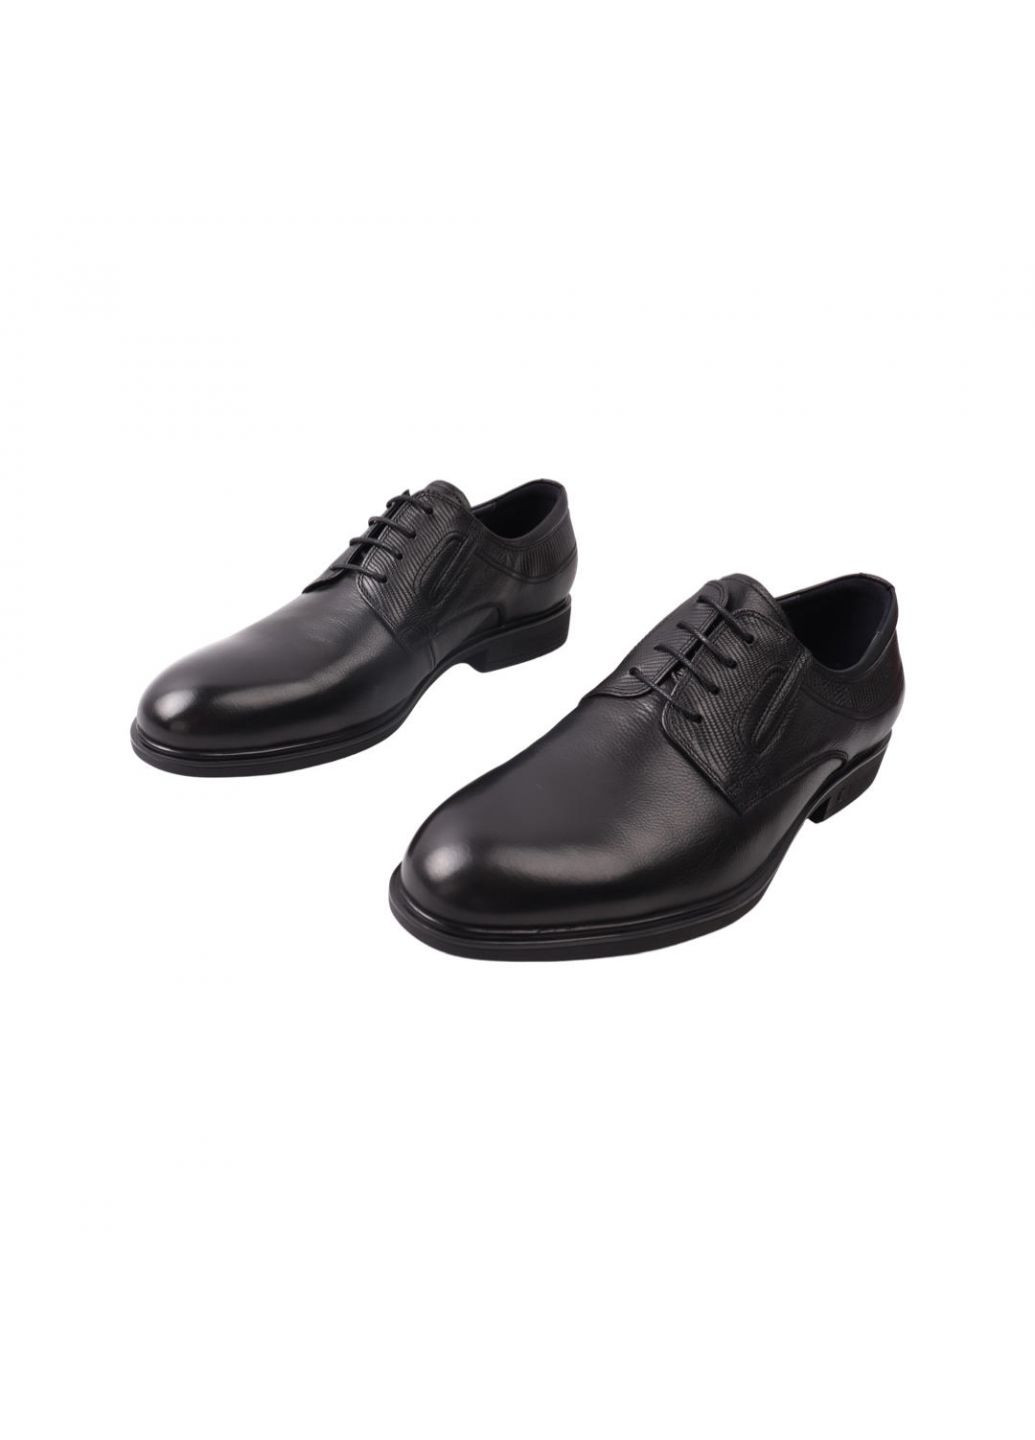 Туфлі чоловічі Lido Marinozi чорні натуральна шкіра Lido Marinozzi 219-21dt (257438149)